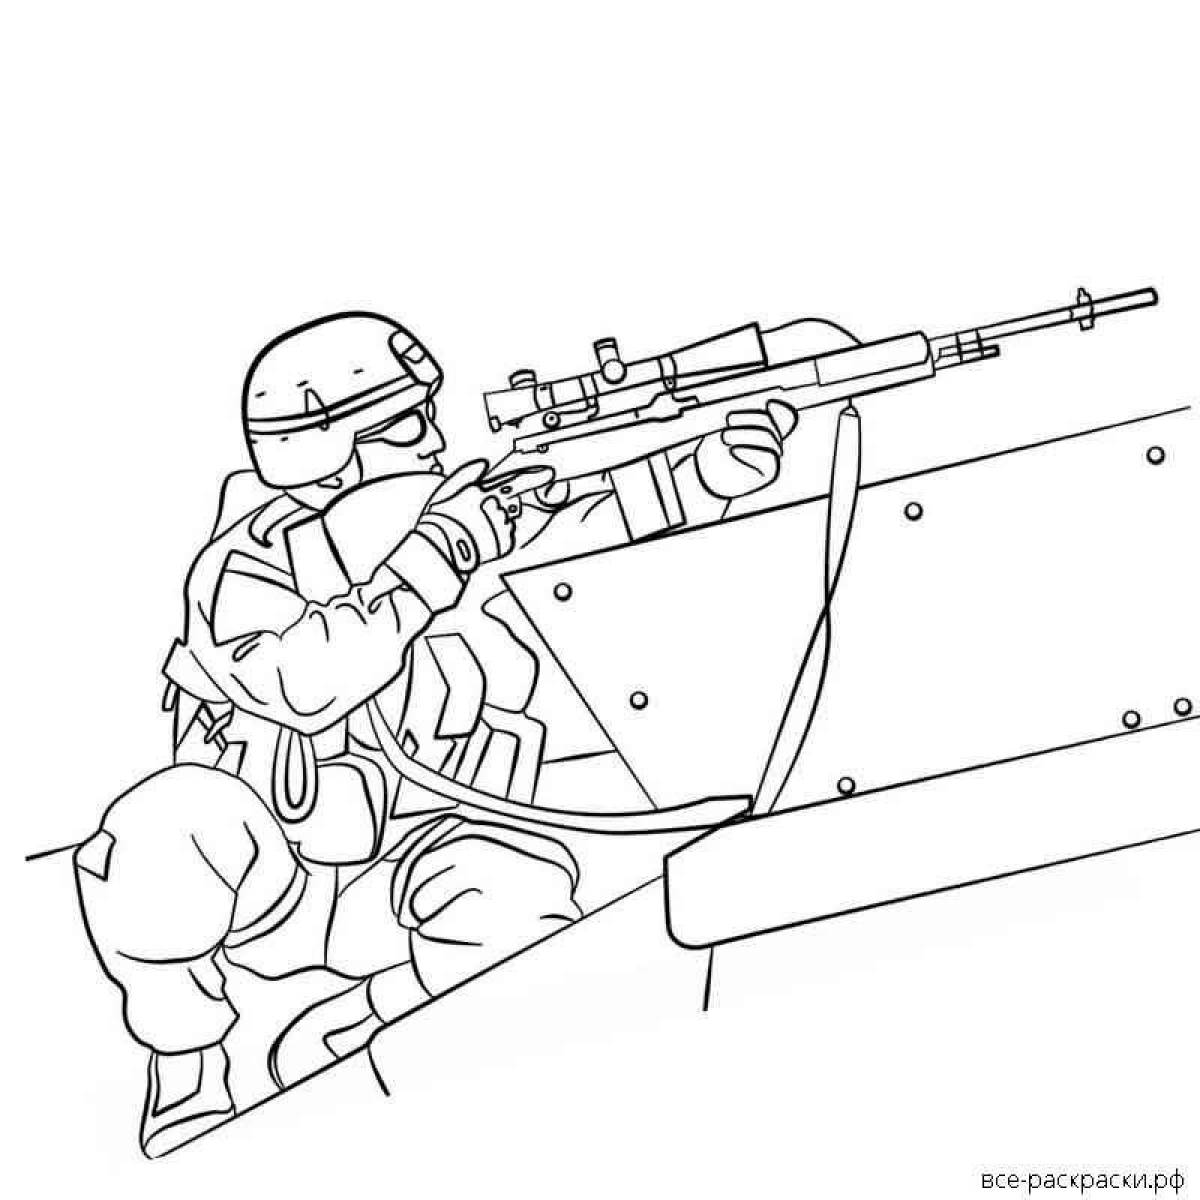 Сложная снайперская раскраска